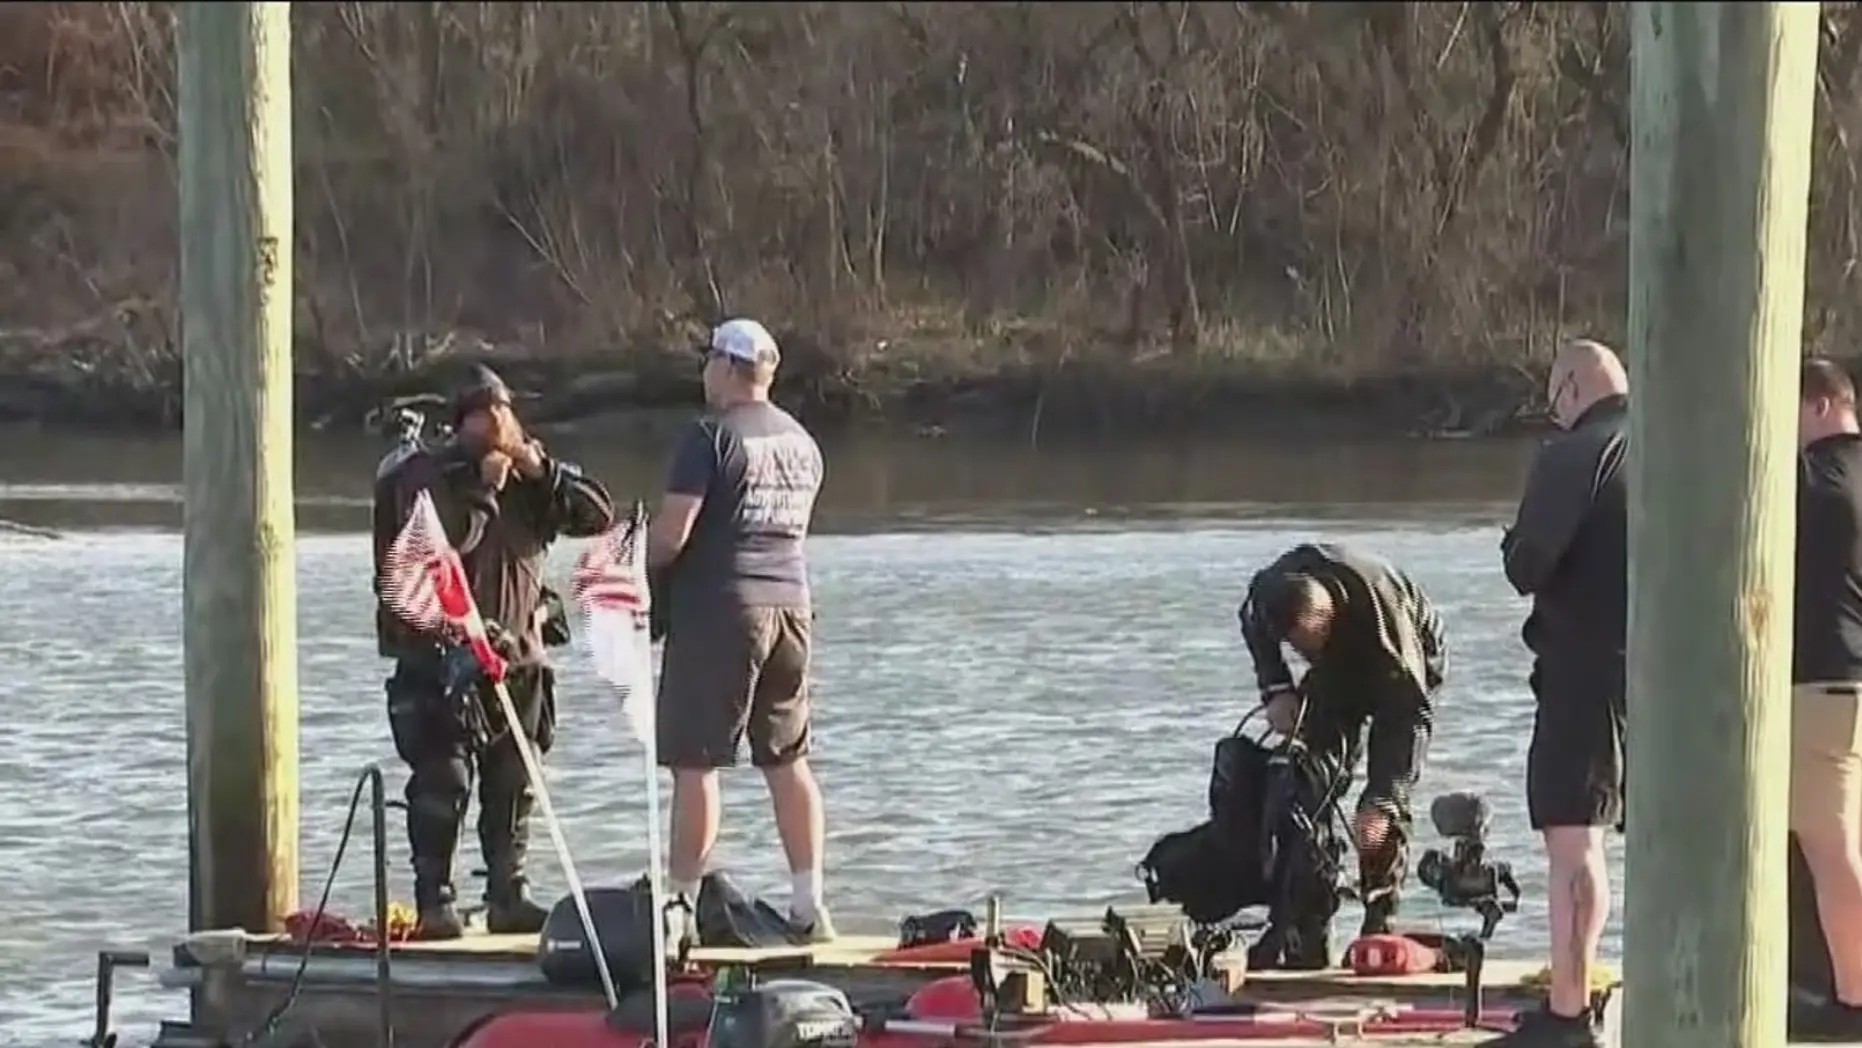 O grupo de mergulhadores próximo ao local onde o corpo foi encontrado (Foto: Reprodução/Fox 29 Philadelphia)